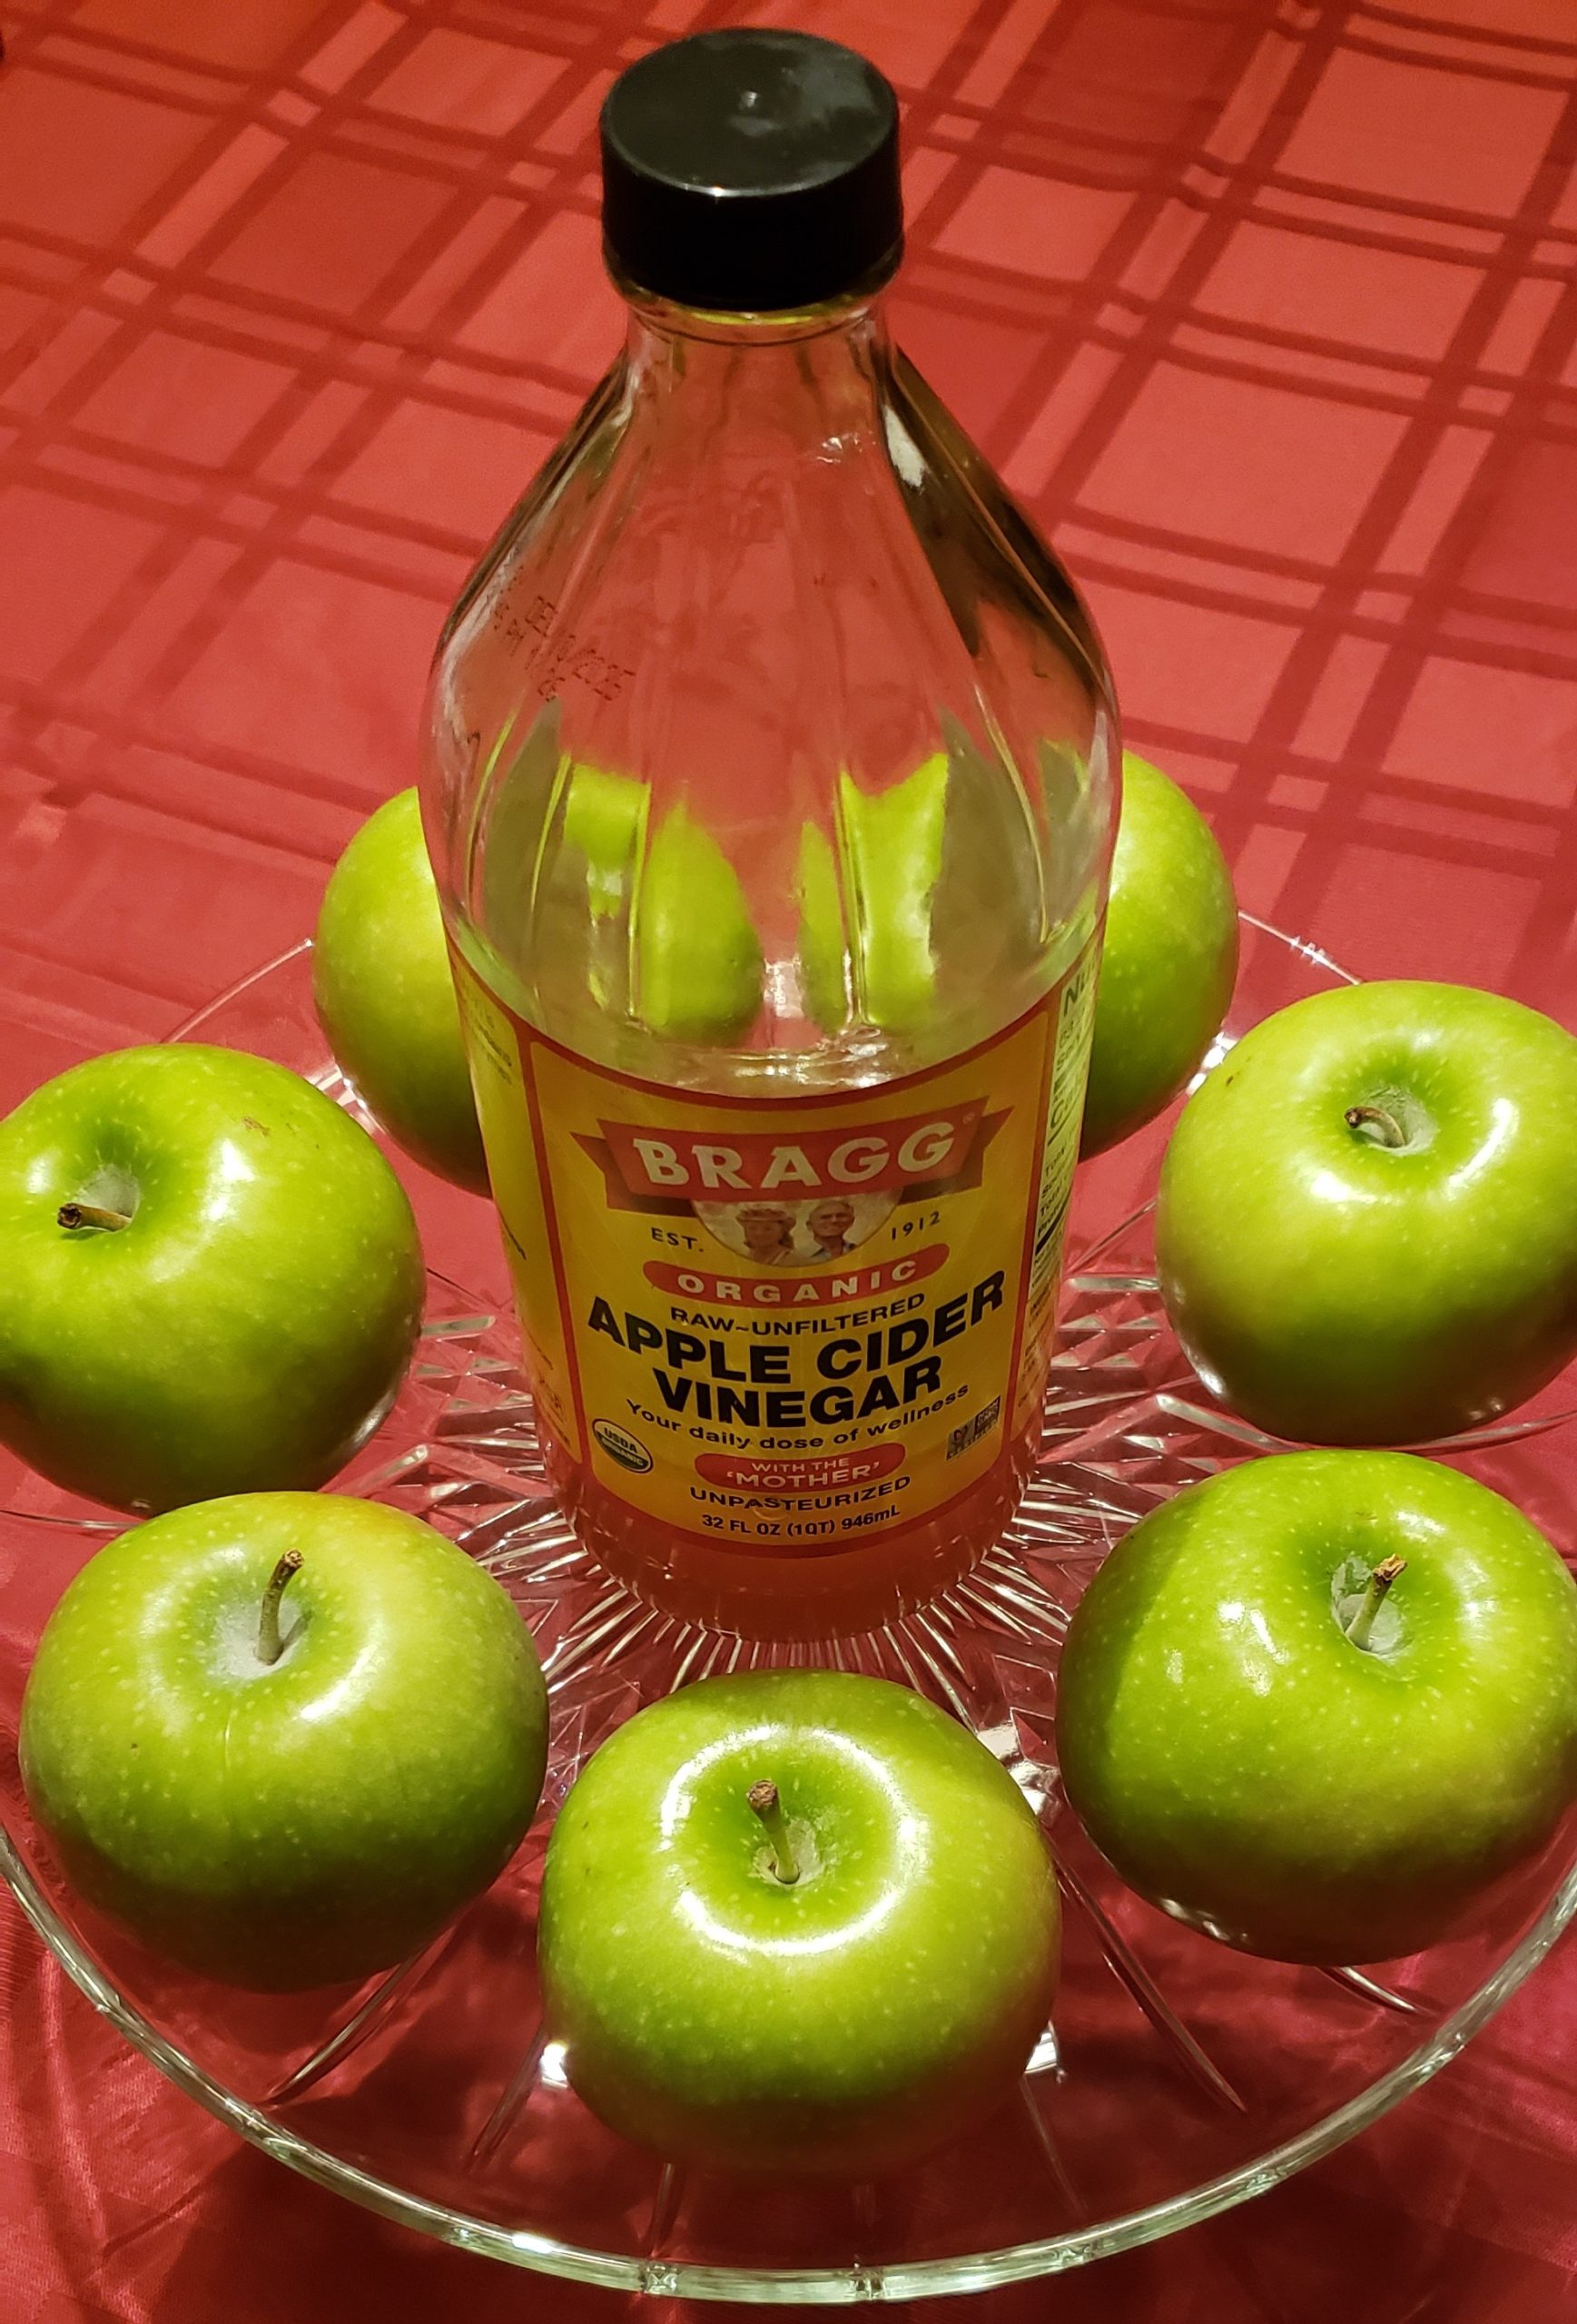 Apple Cider Vinegar a.k.a. ACV